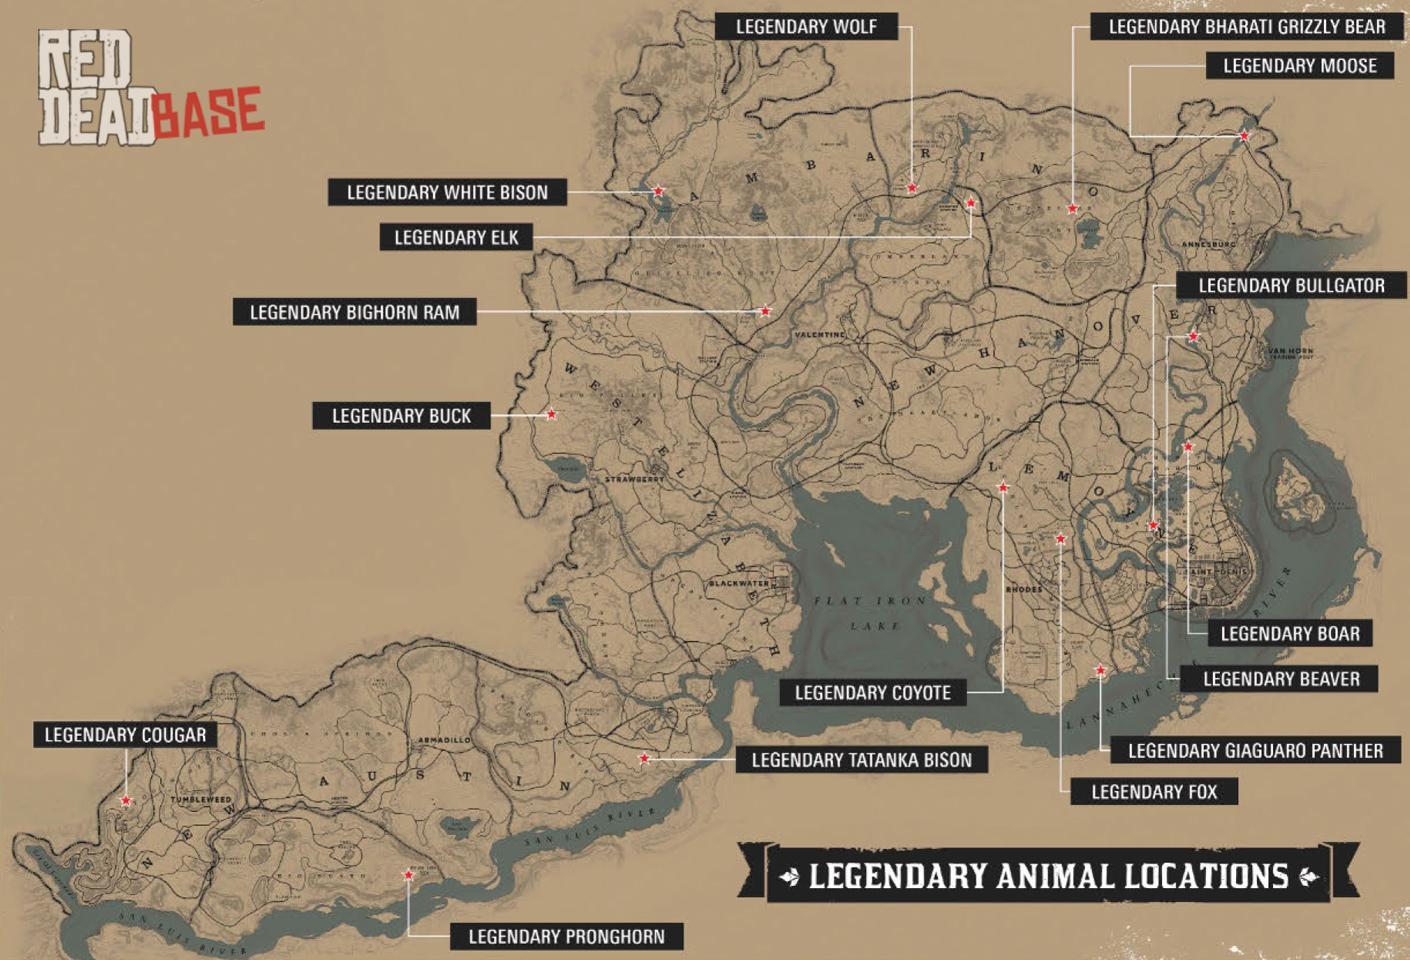 Legendary Cougar - Red Dead Redemption 2 Animals Species & Wildlife